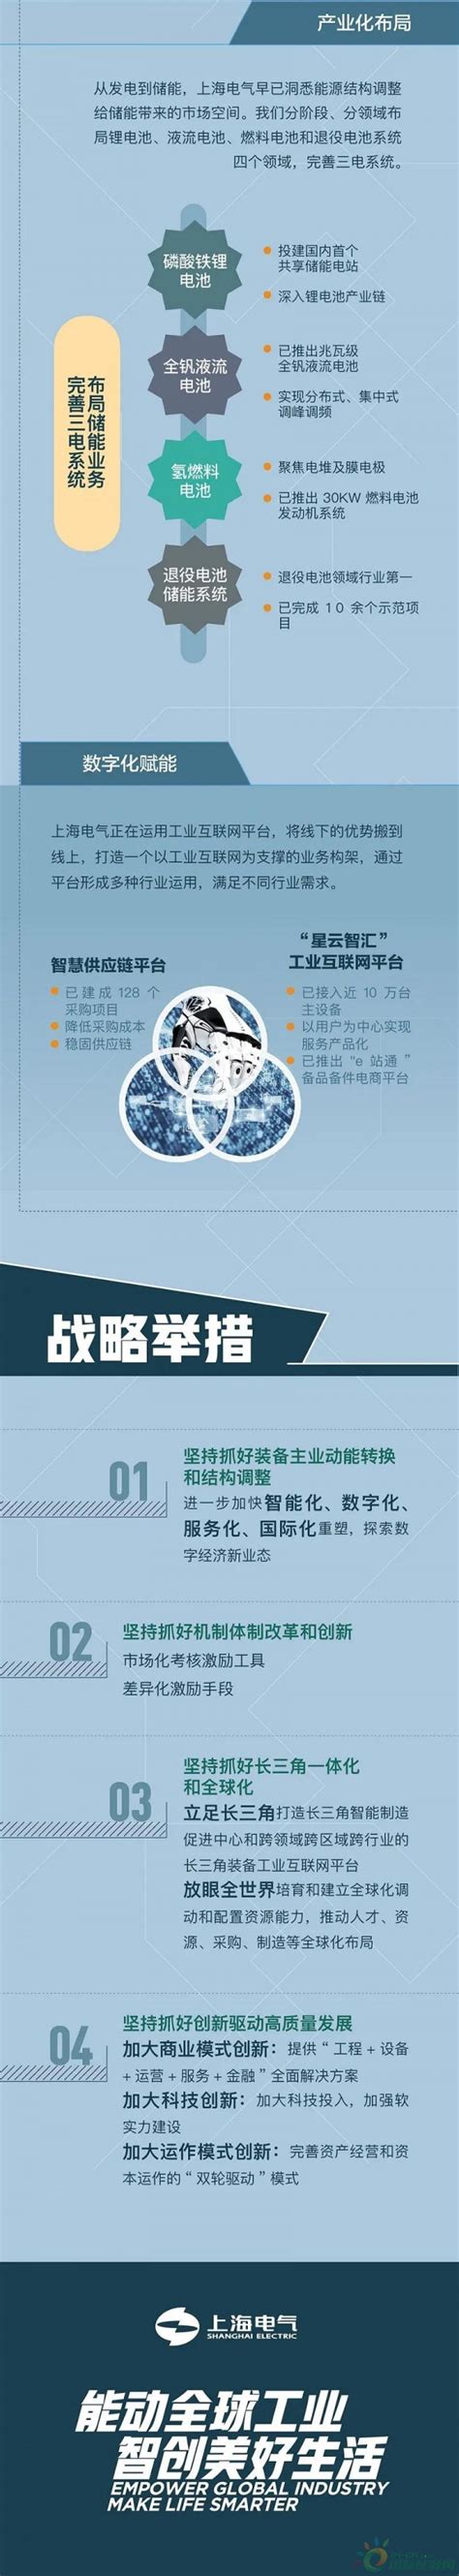 上海电气集团有限公司_360百科